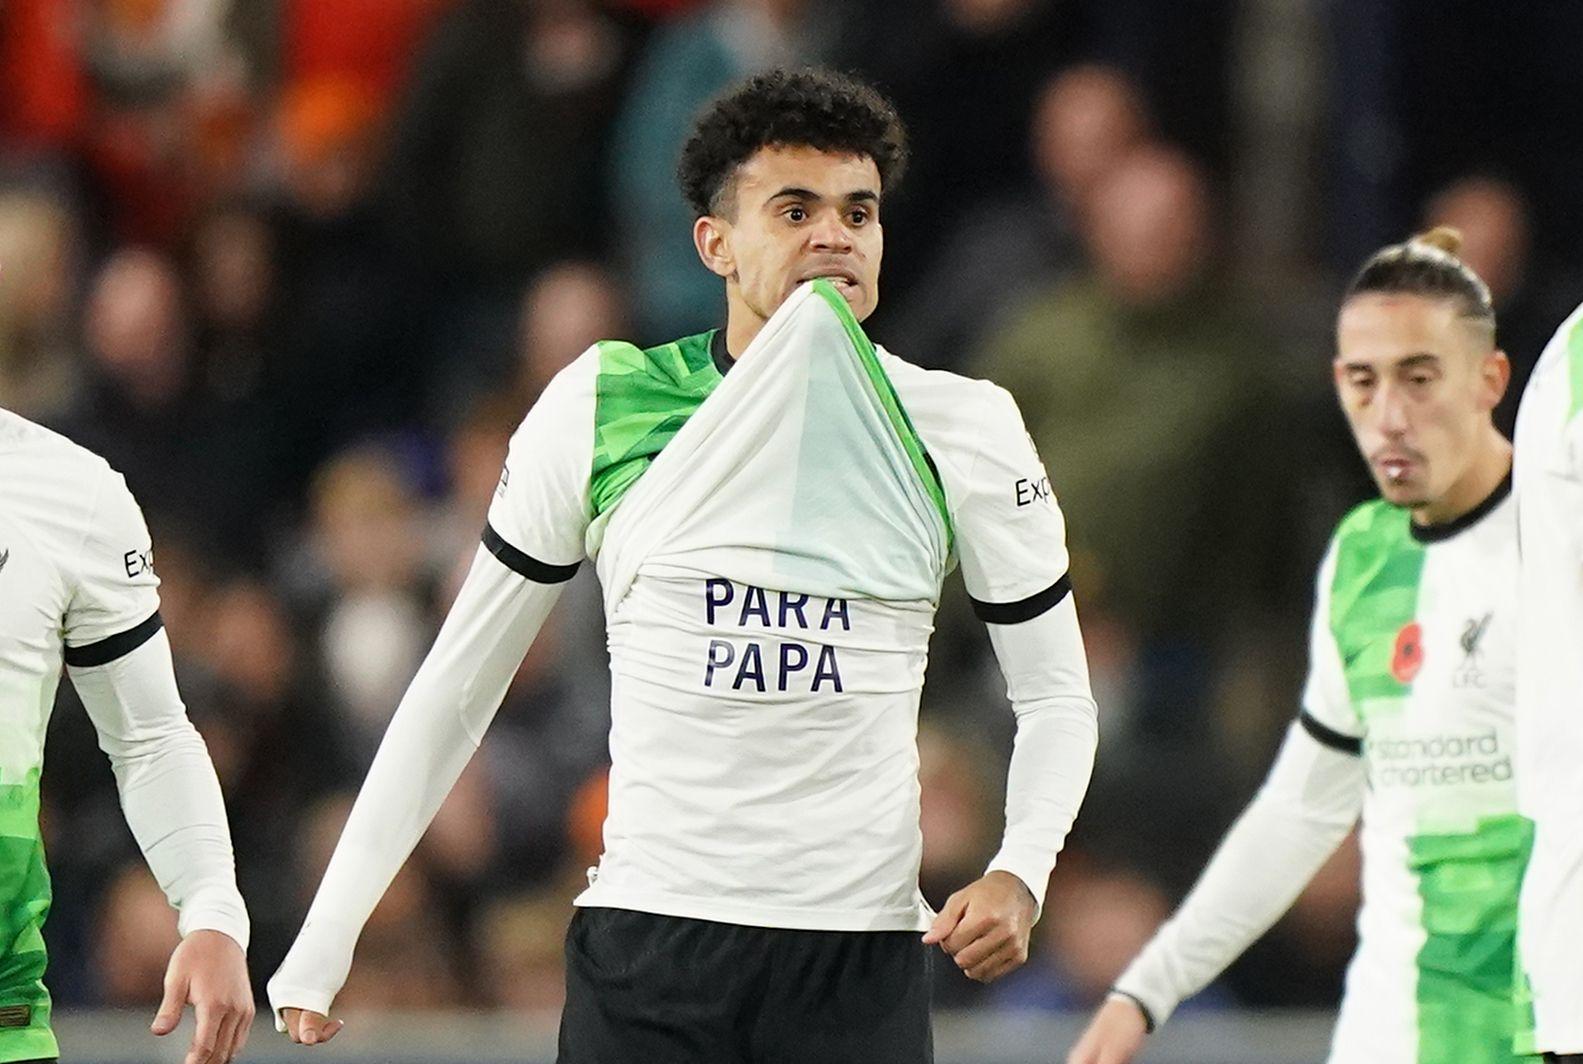 Luis Díaz mostró una camiseta que decía libertad para papá, luego de anotar un gol en el último minuto del partido.